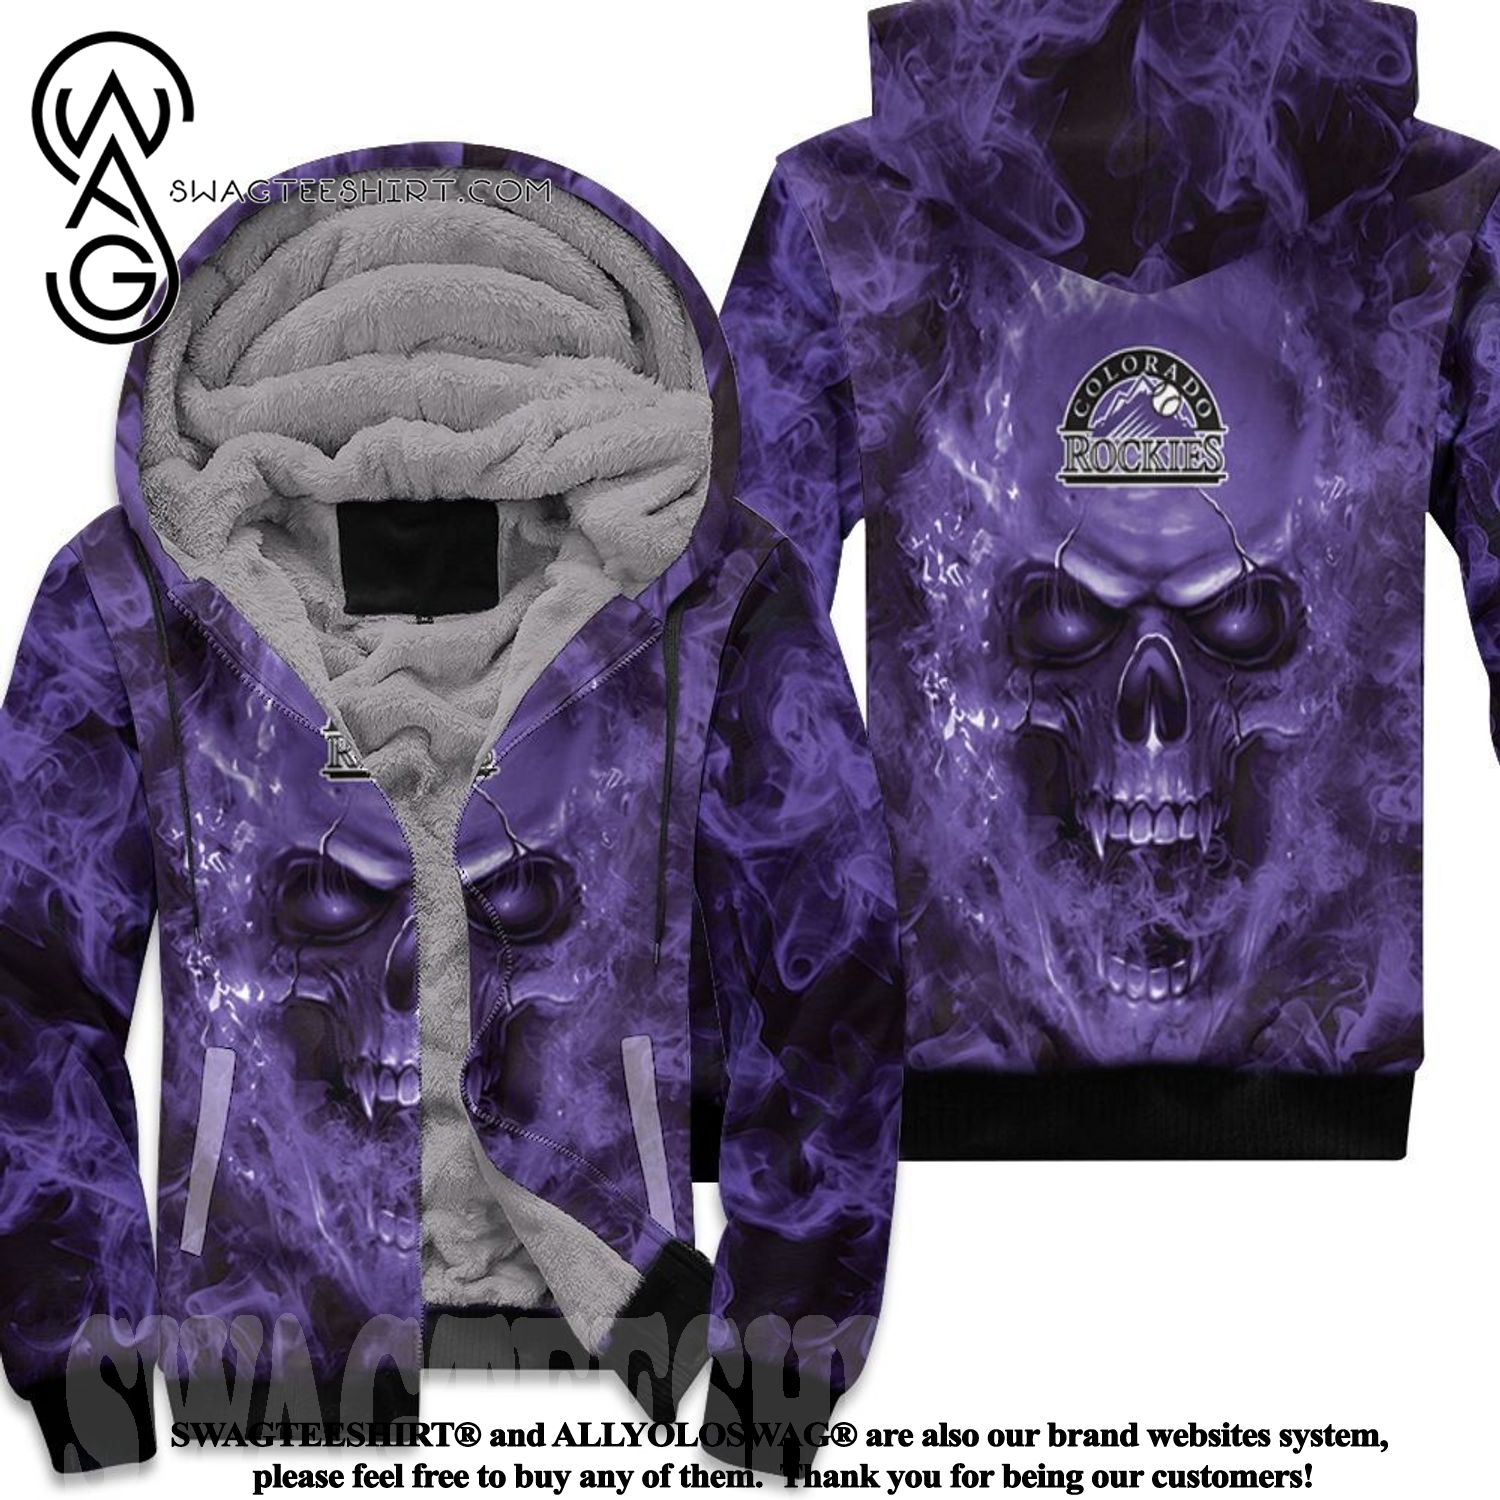 Colorado Rockies Mlb Fans Skull New Outfit Full Printed Fleece Hoodie